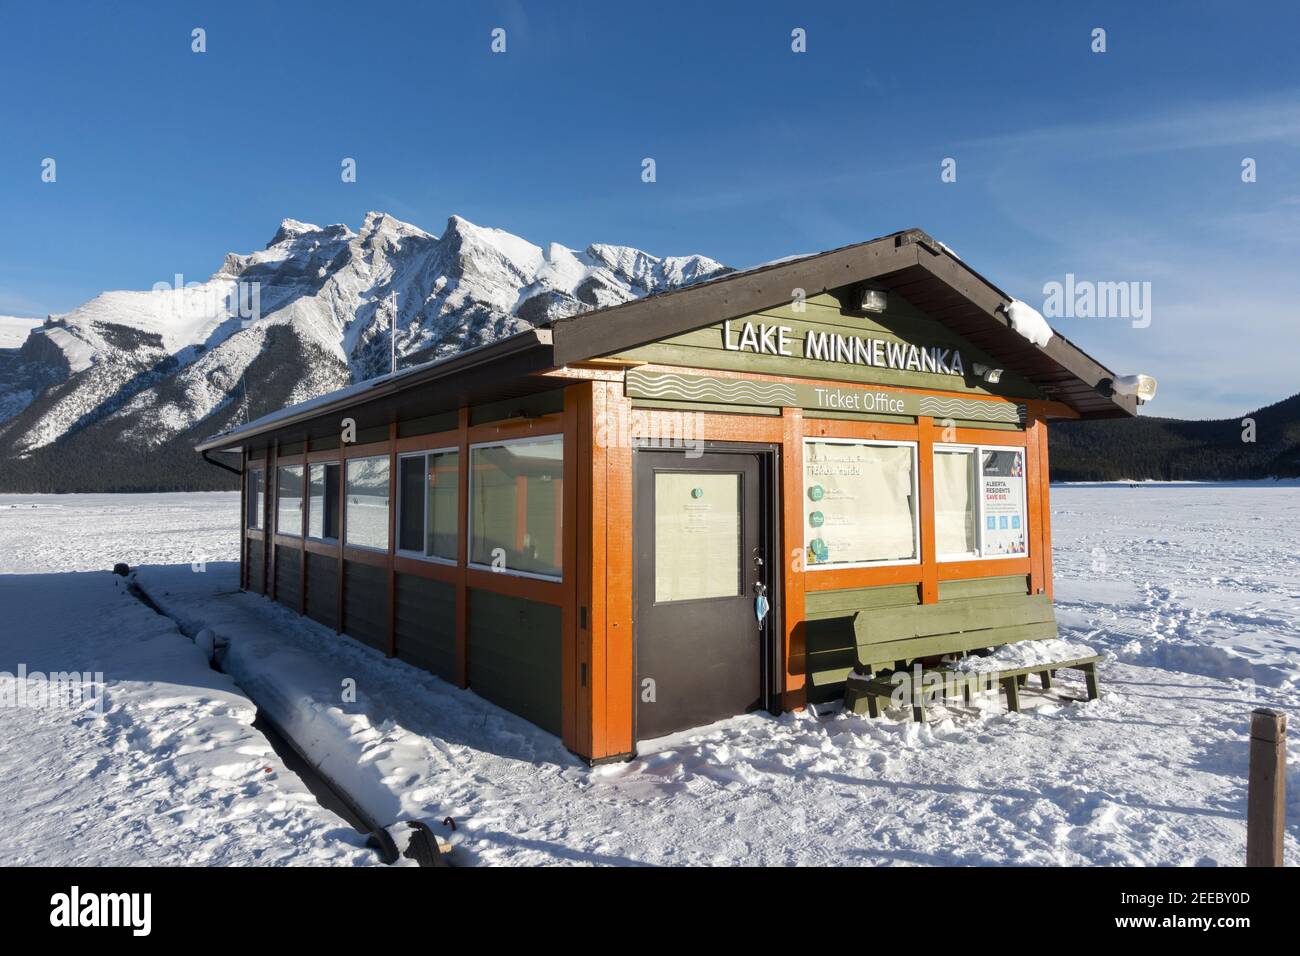 Croisière sur le lac Minnewanka plate-forme de quai flottant et bureau de vente de billets fermé en hiver, près de Banff, Alberta, Rocheuses canadiennes Banque D'Images